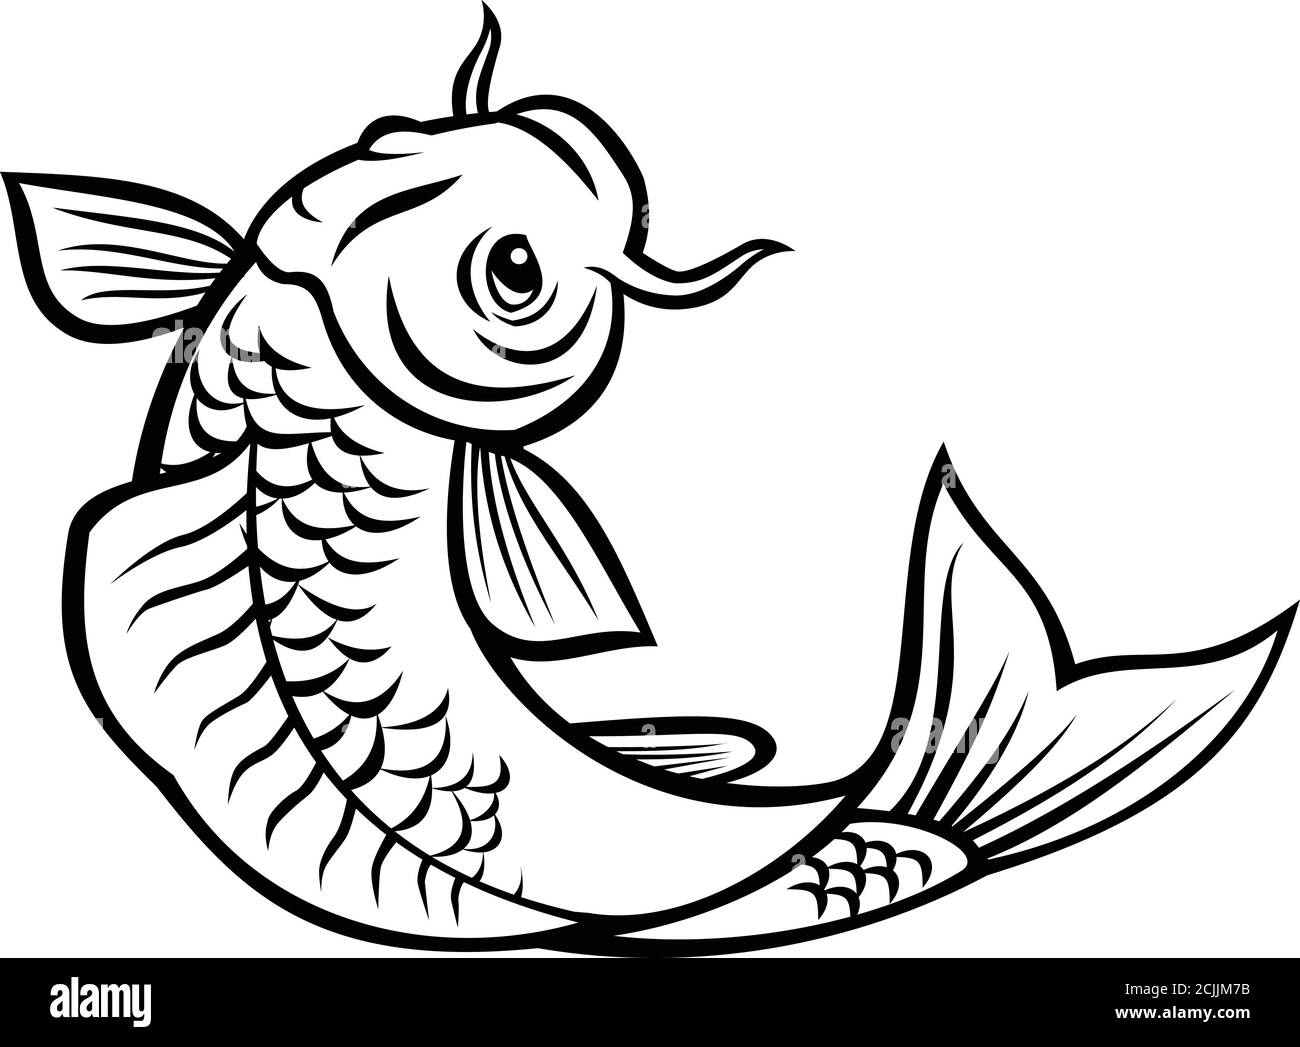 Illustration de style caricaturé d'un poisson jinli, Koi ou nishikigoi, des variétés colorées de la carpe d'Amur Cyprinus rubrofuscus, sautant sur le backgro isolé Illustration de Vecteur